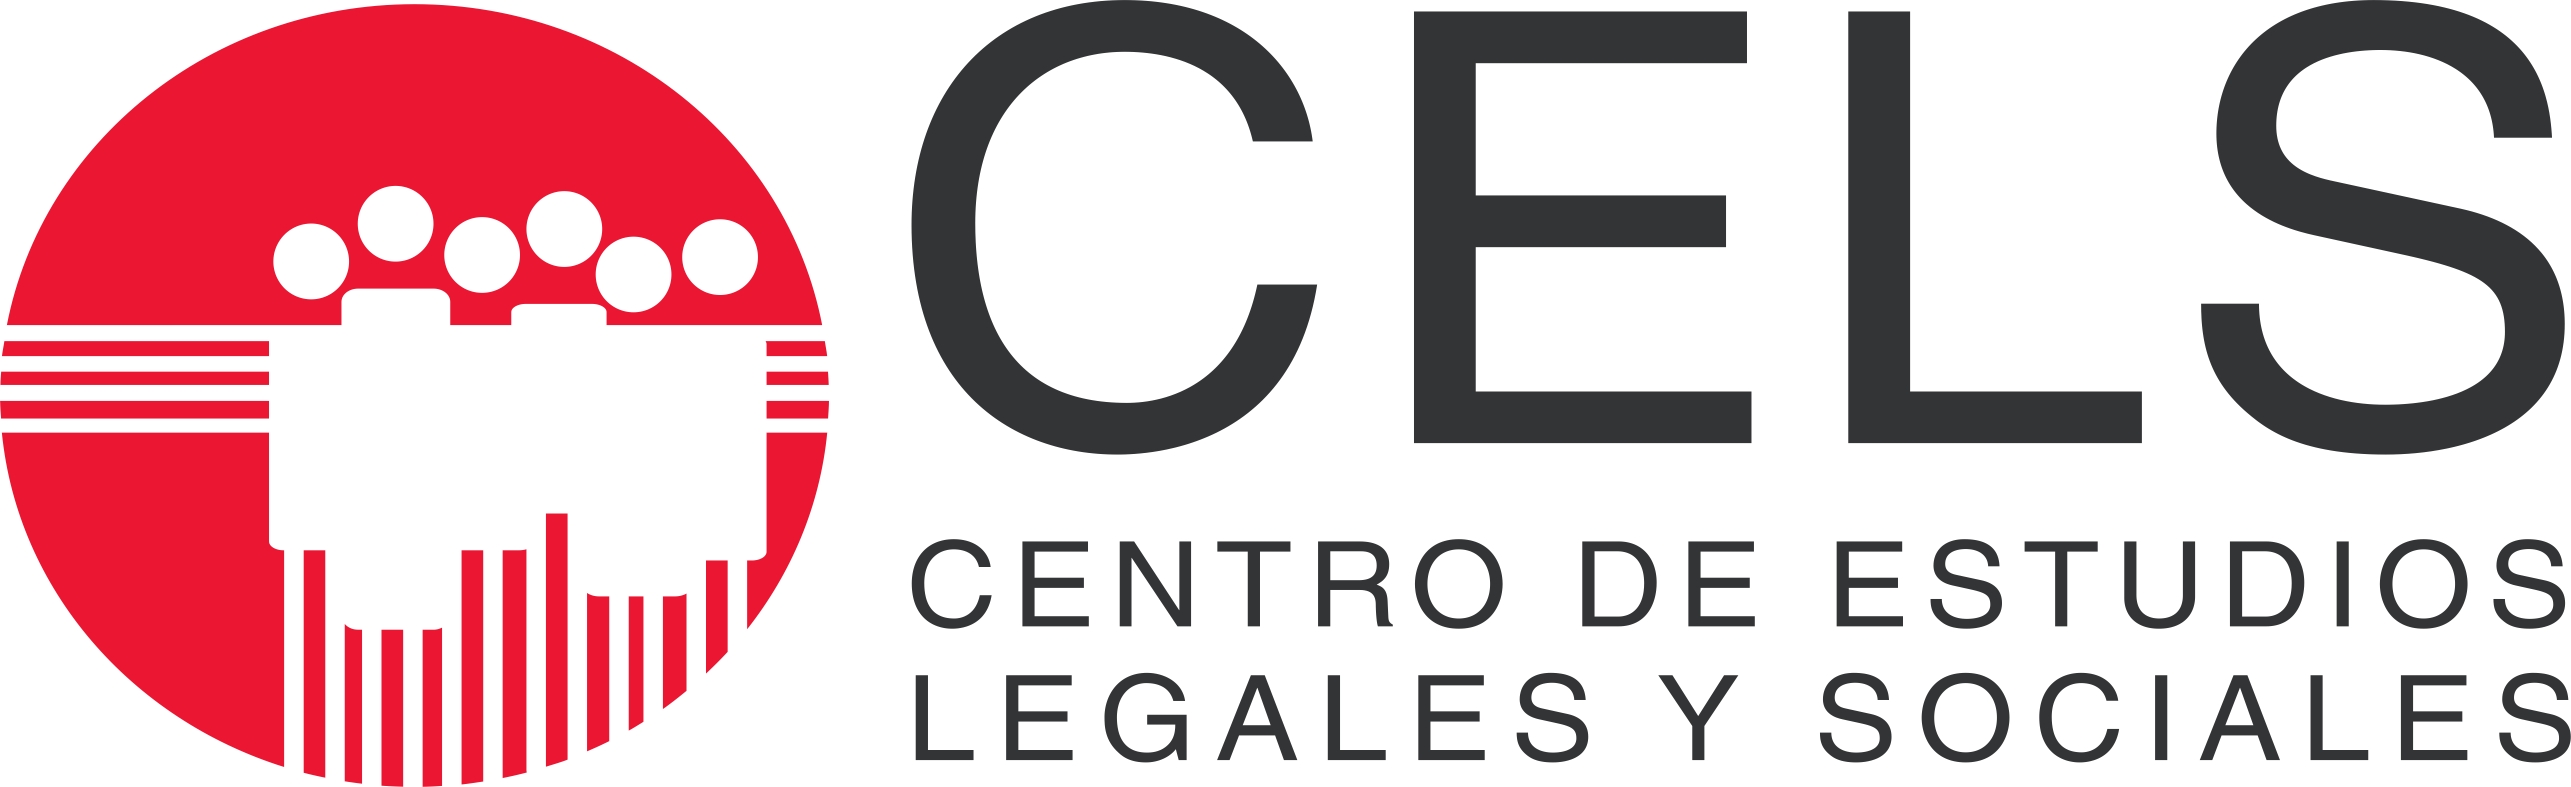 Resultado de imagen para Centro de Estudios Legales y Sociales (CELS